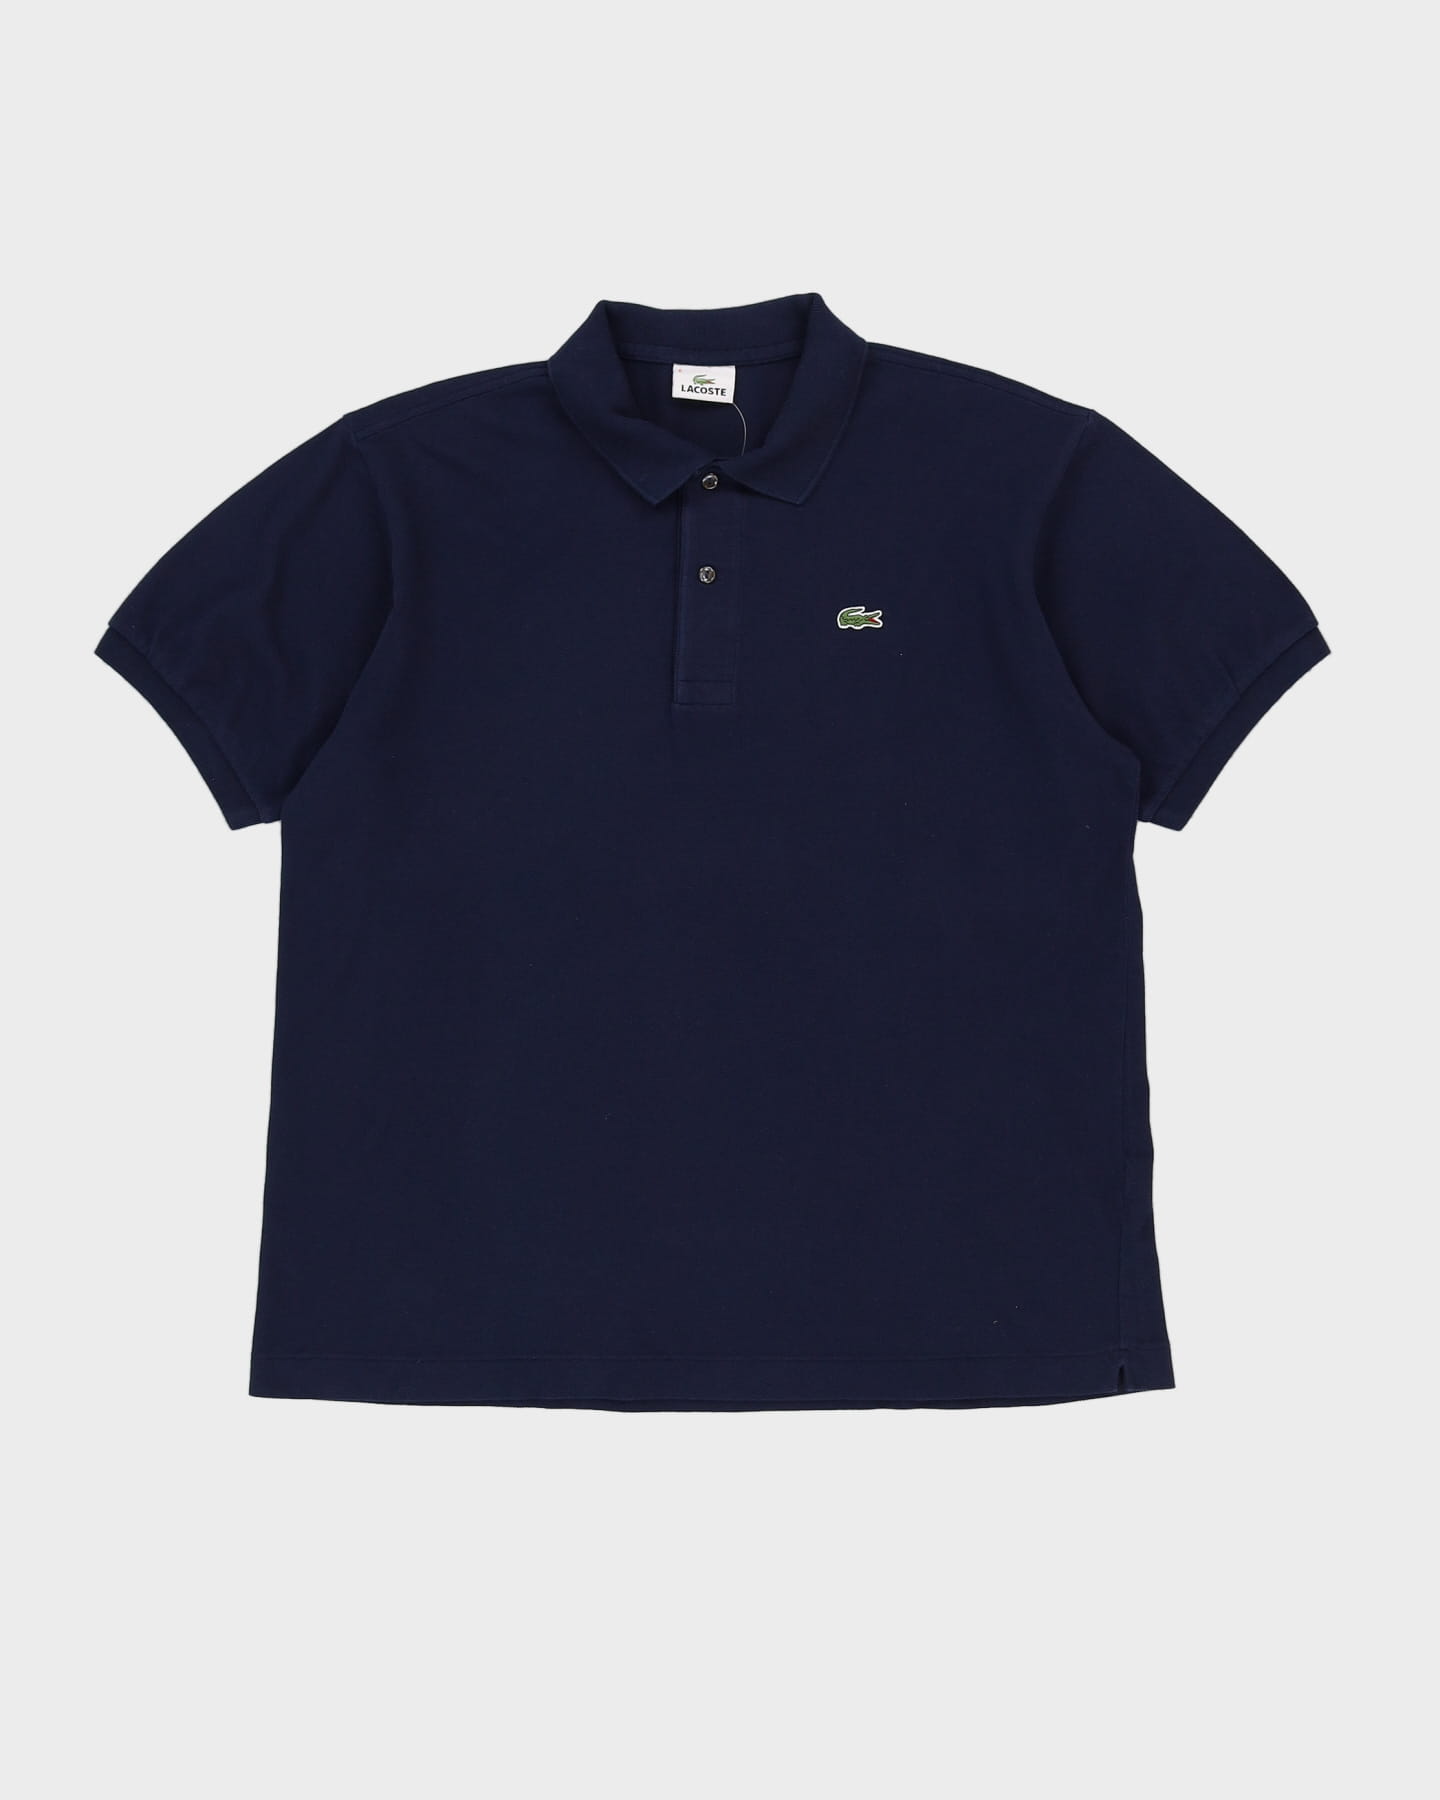 Lacoste Navy Polo Shirt - XL